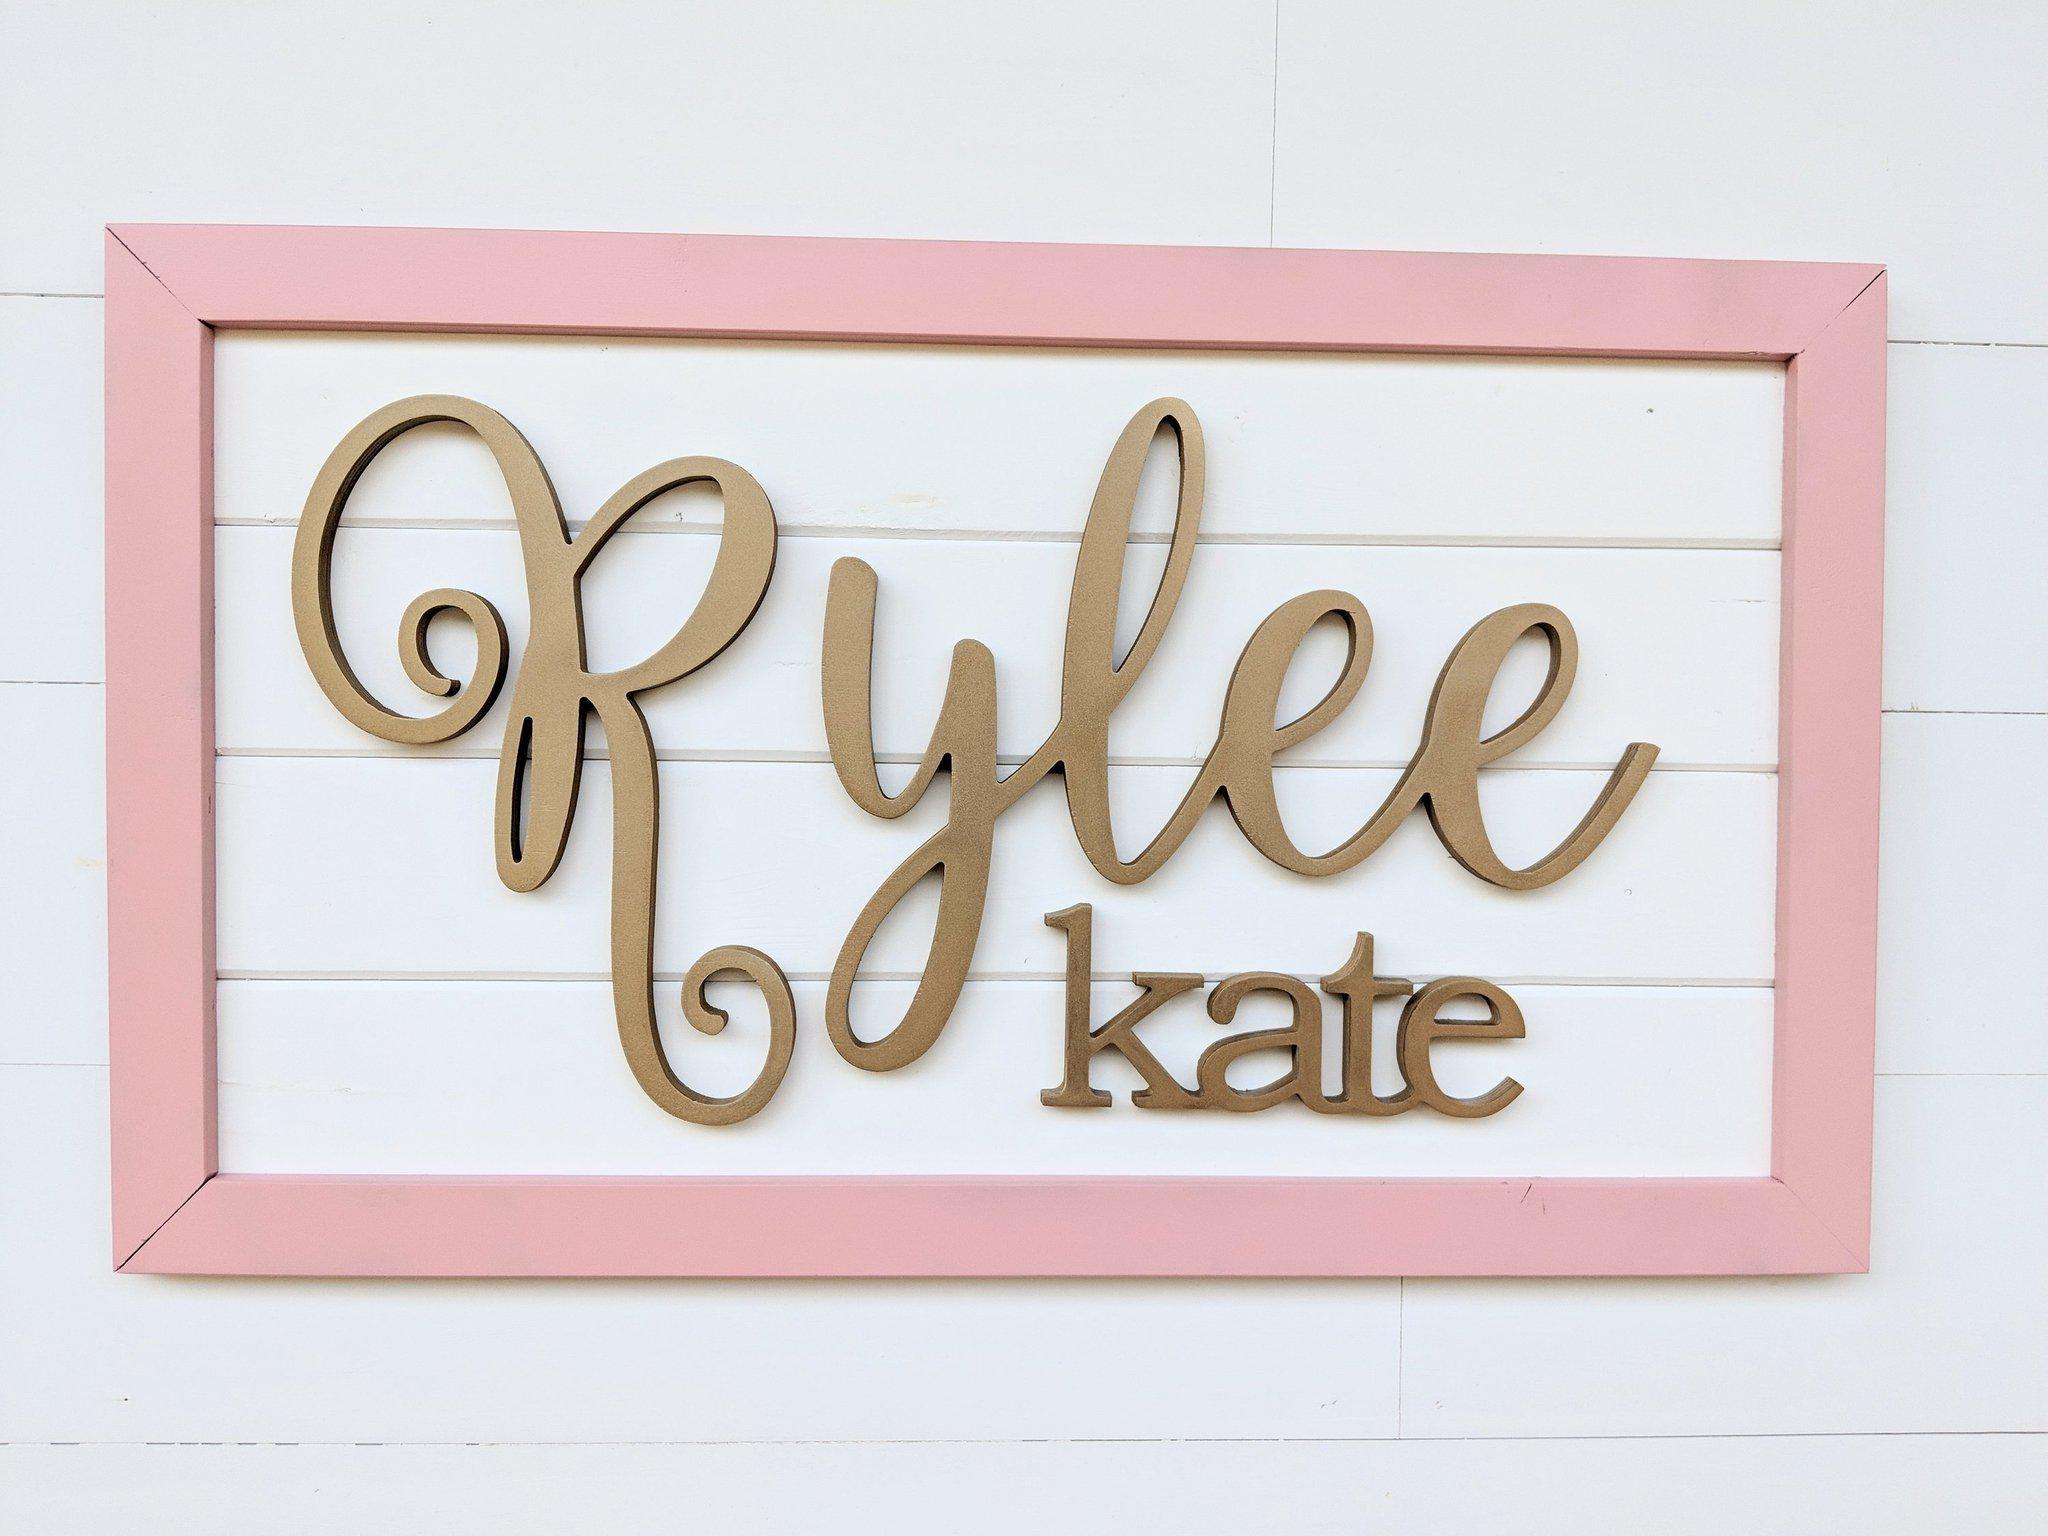 Name Sign - Saylor Rayne Style